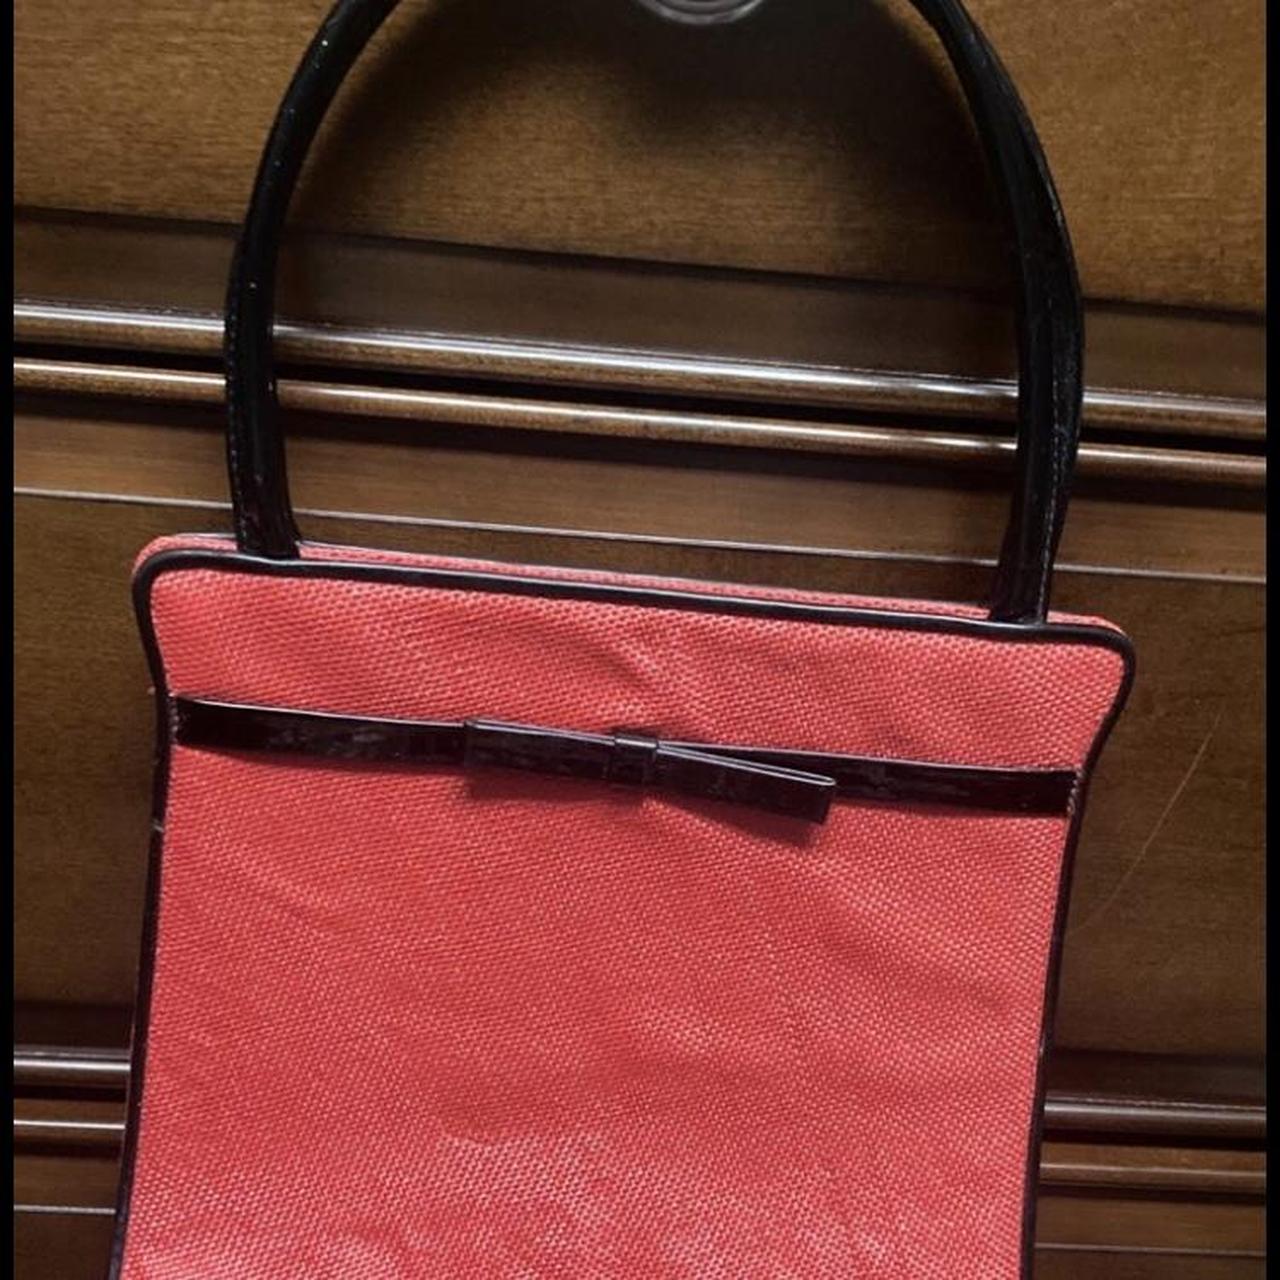 Lulu Guinness Bags & Handbags for Women for sale | eBay